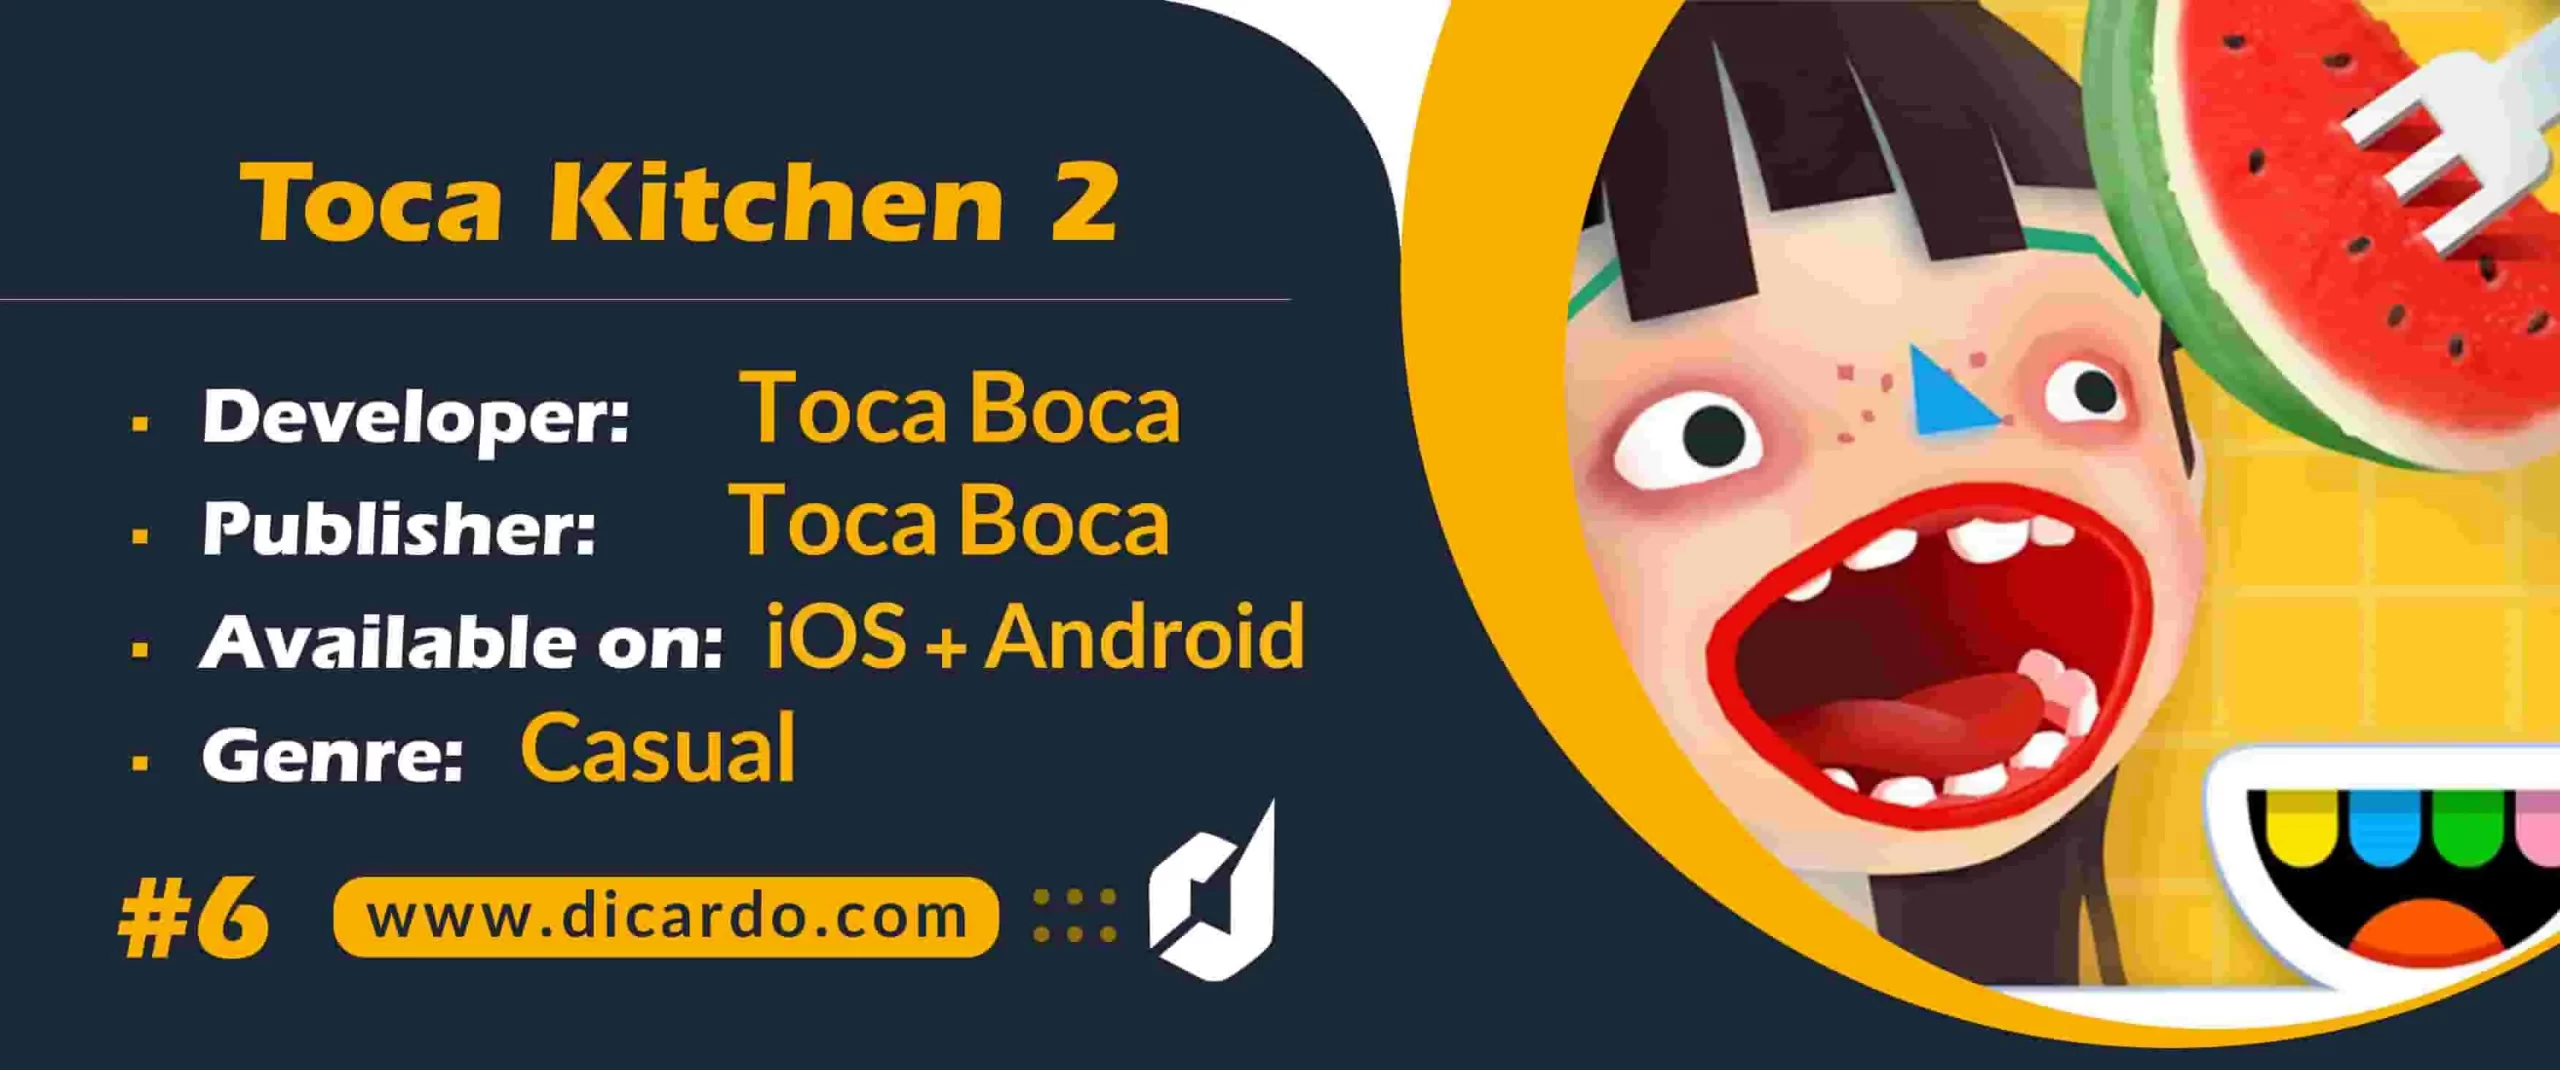 توکا کیچن تو Toca Kitchen 2 از برترین بازیهای آشپزی آموزنده